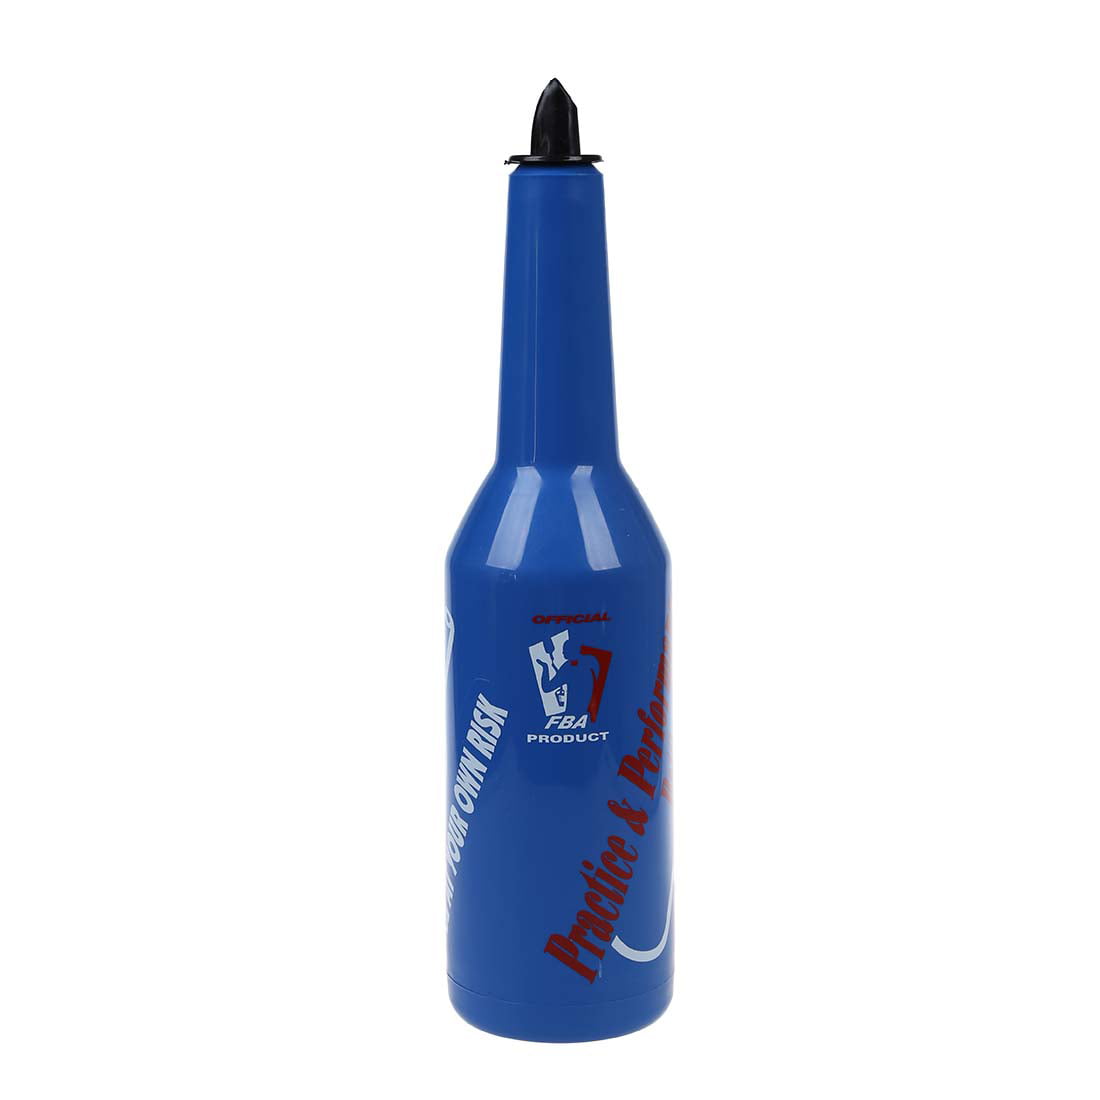 Nrpfell Flair Bartender Bartending Practice Bar Pub Bottle Wine Cocktail Shaker Blue 